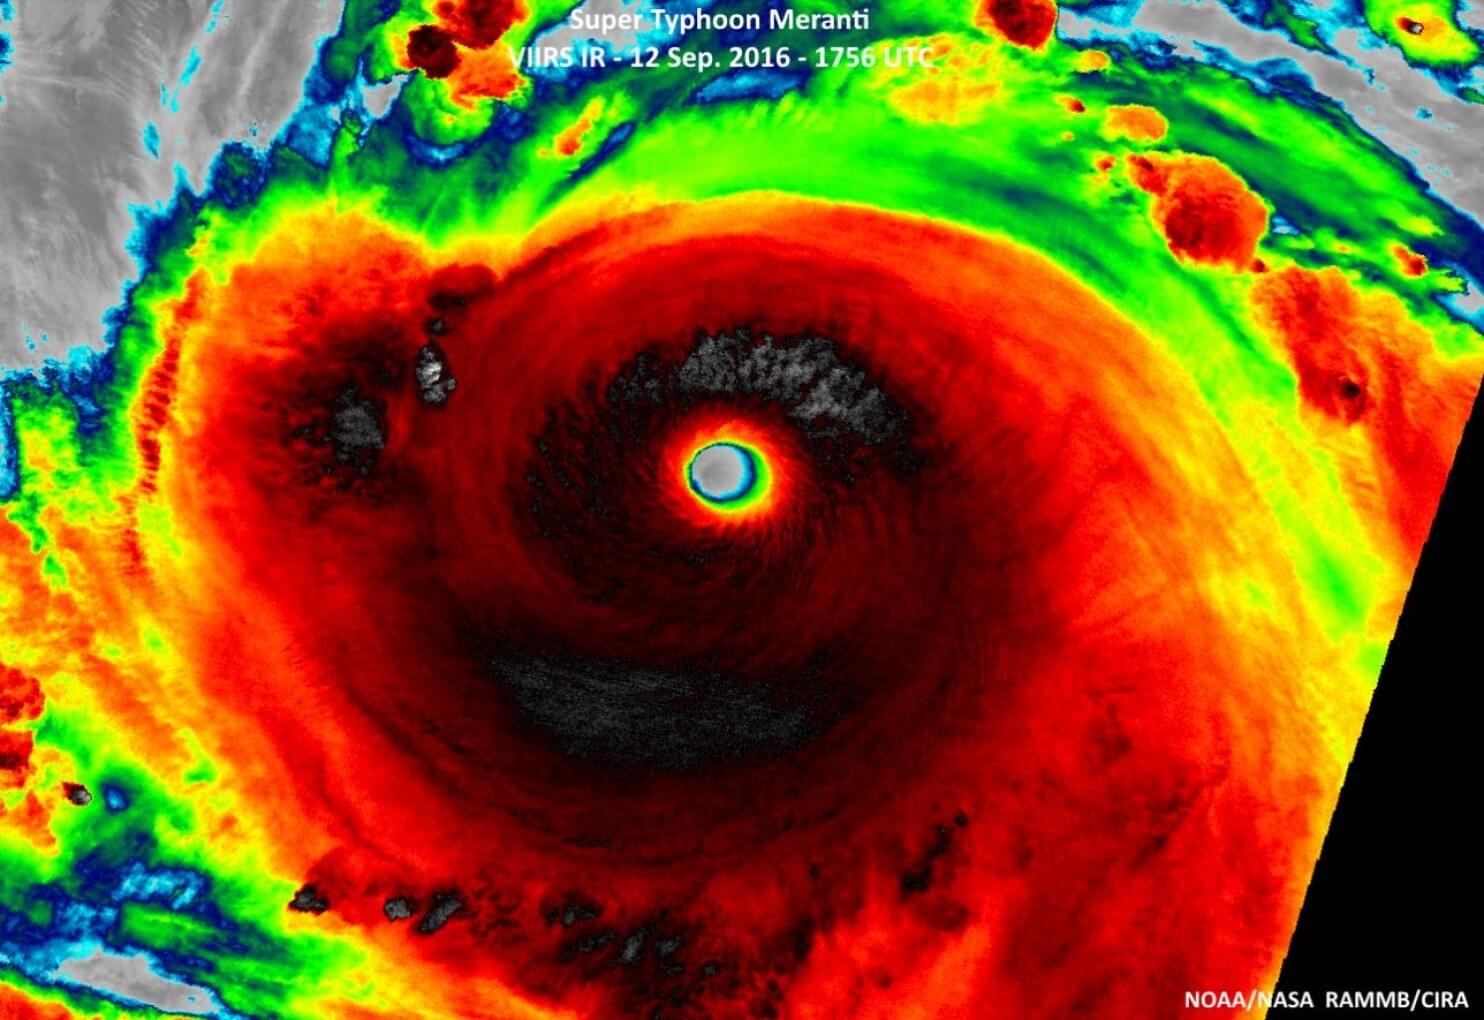 Image of Super Typhoon Meranti